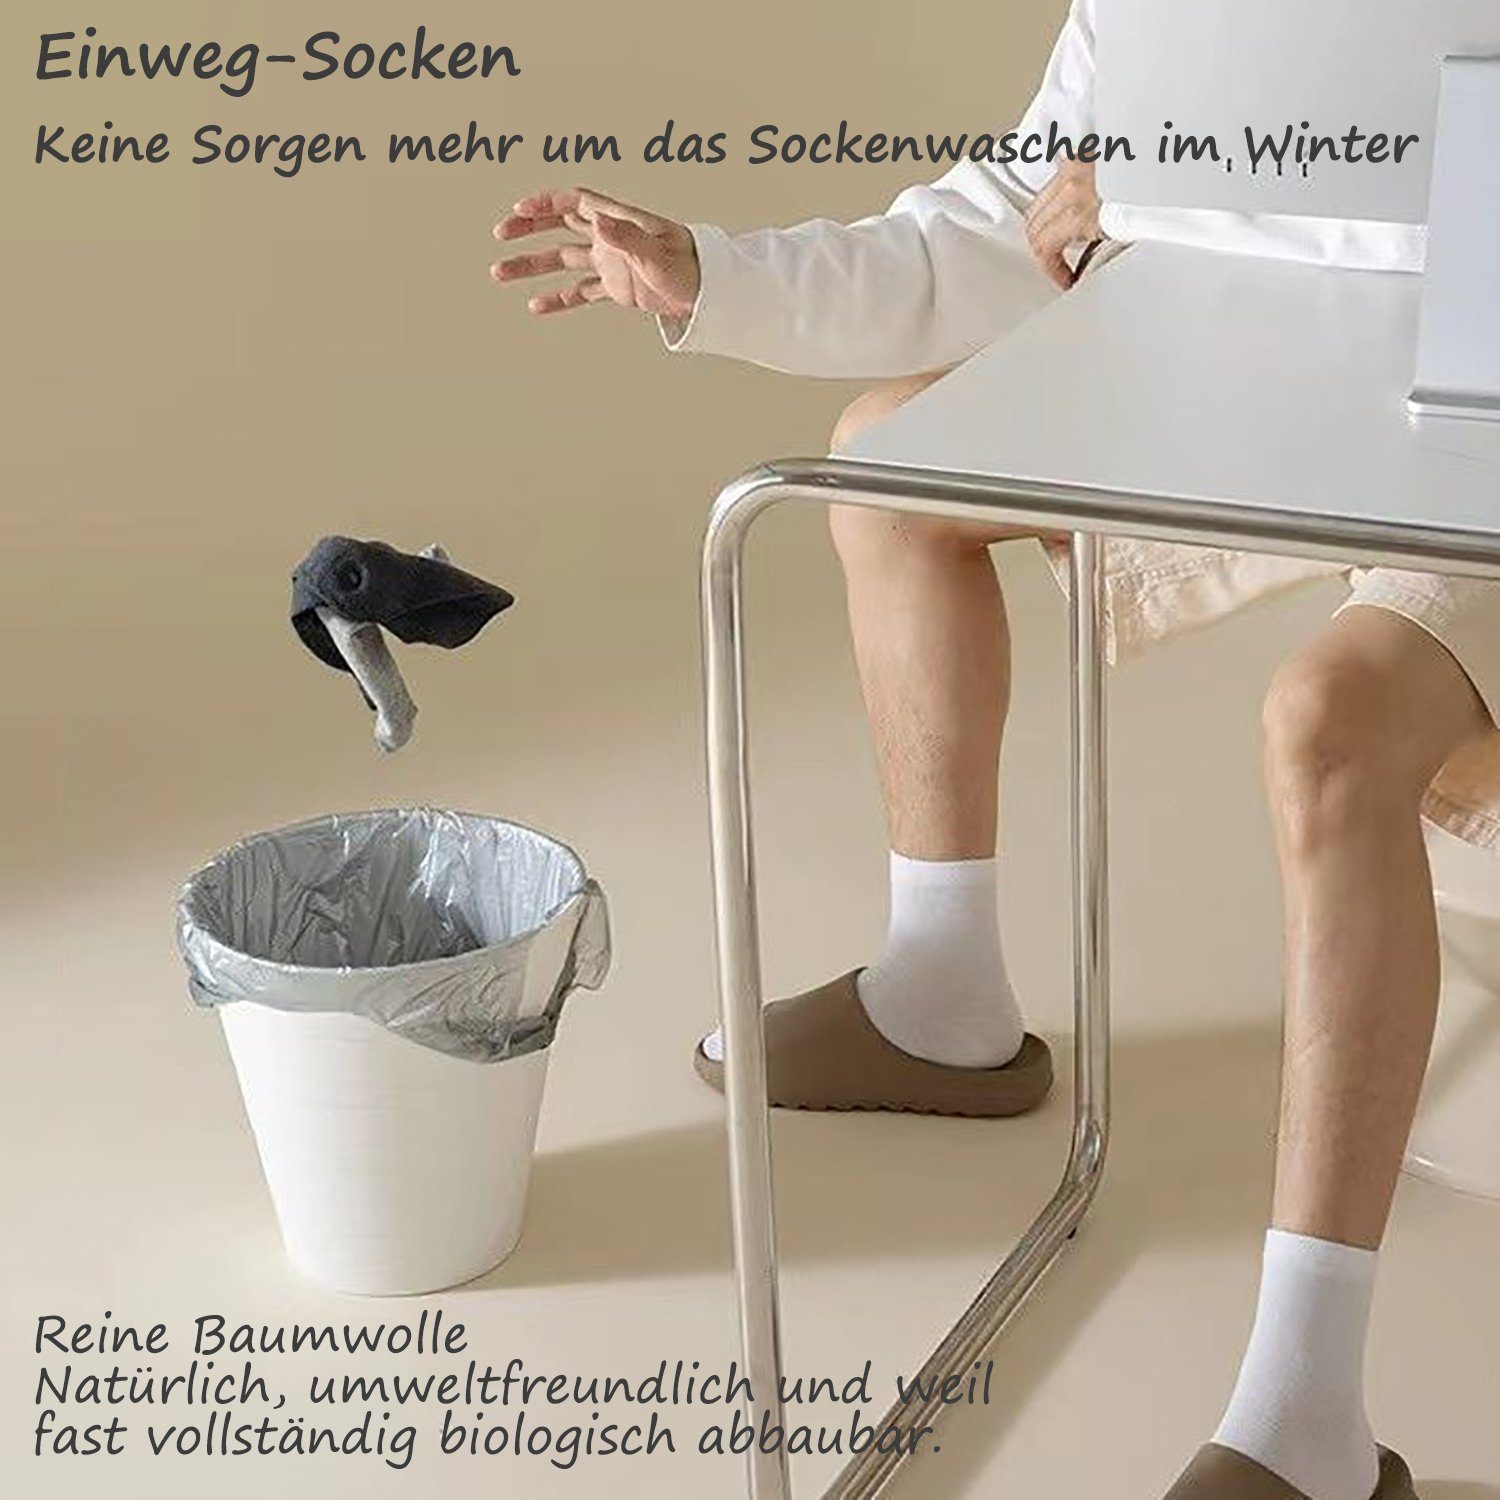 Unisex Einweg-Socken Paar 30 Baum-wolle Daisred Weiß Sportsocken Freizeitsocken